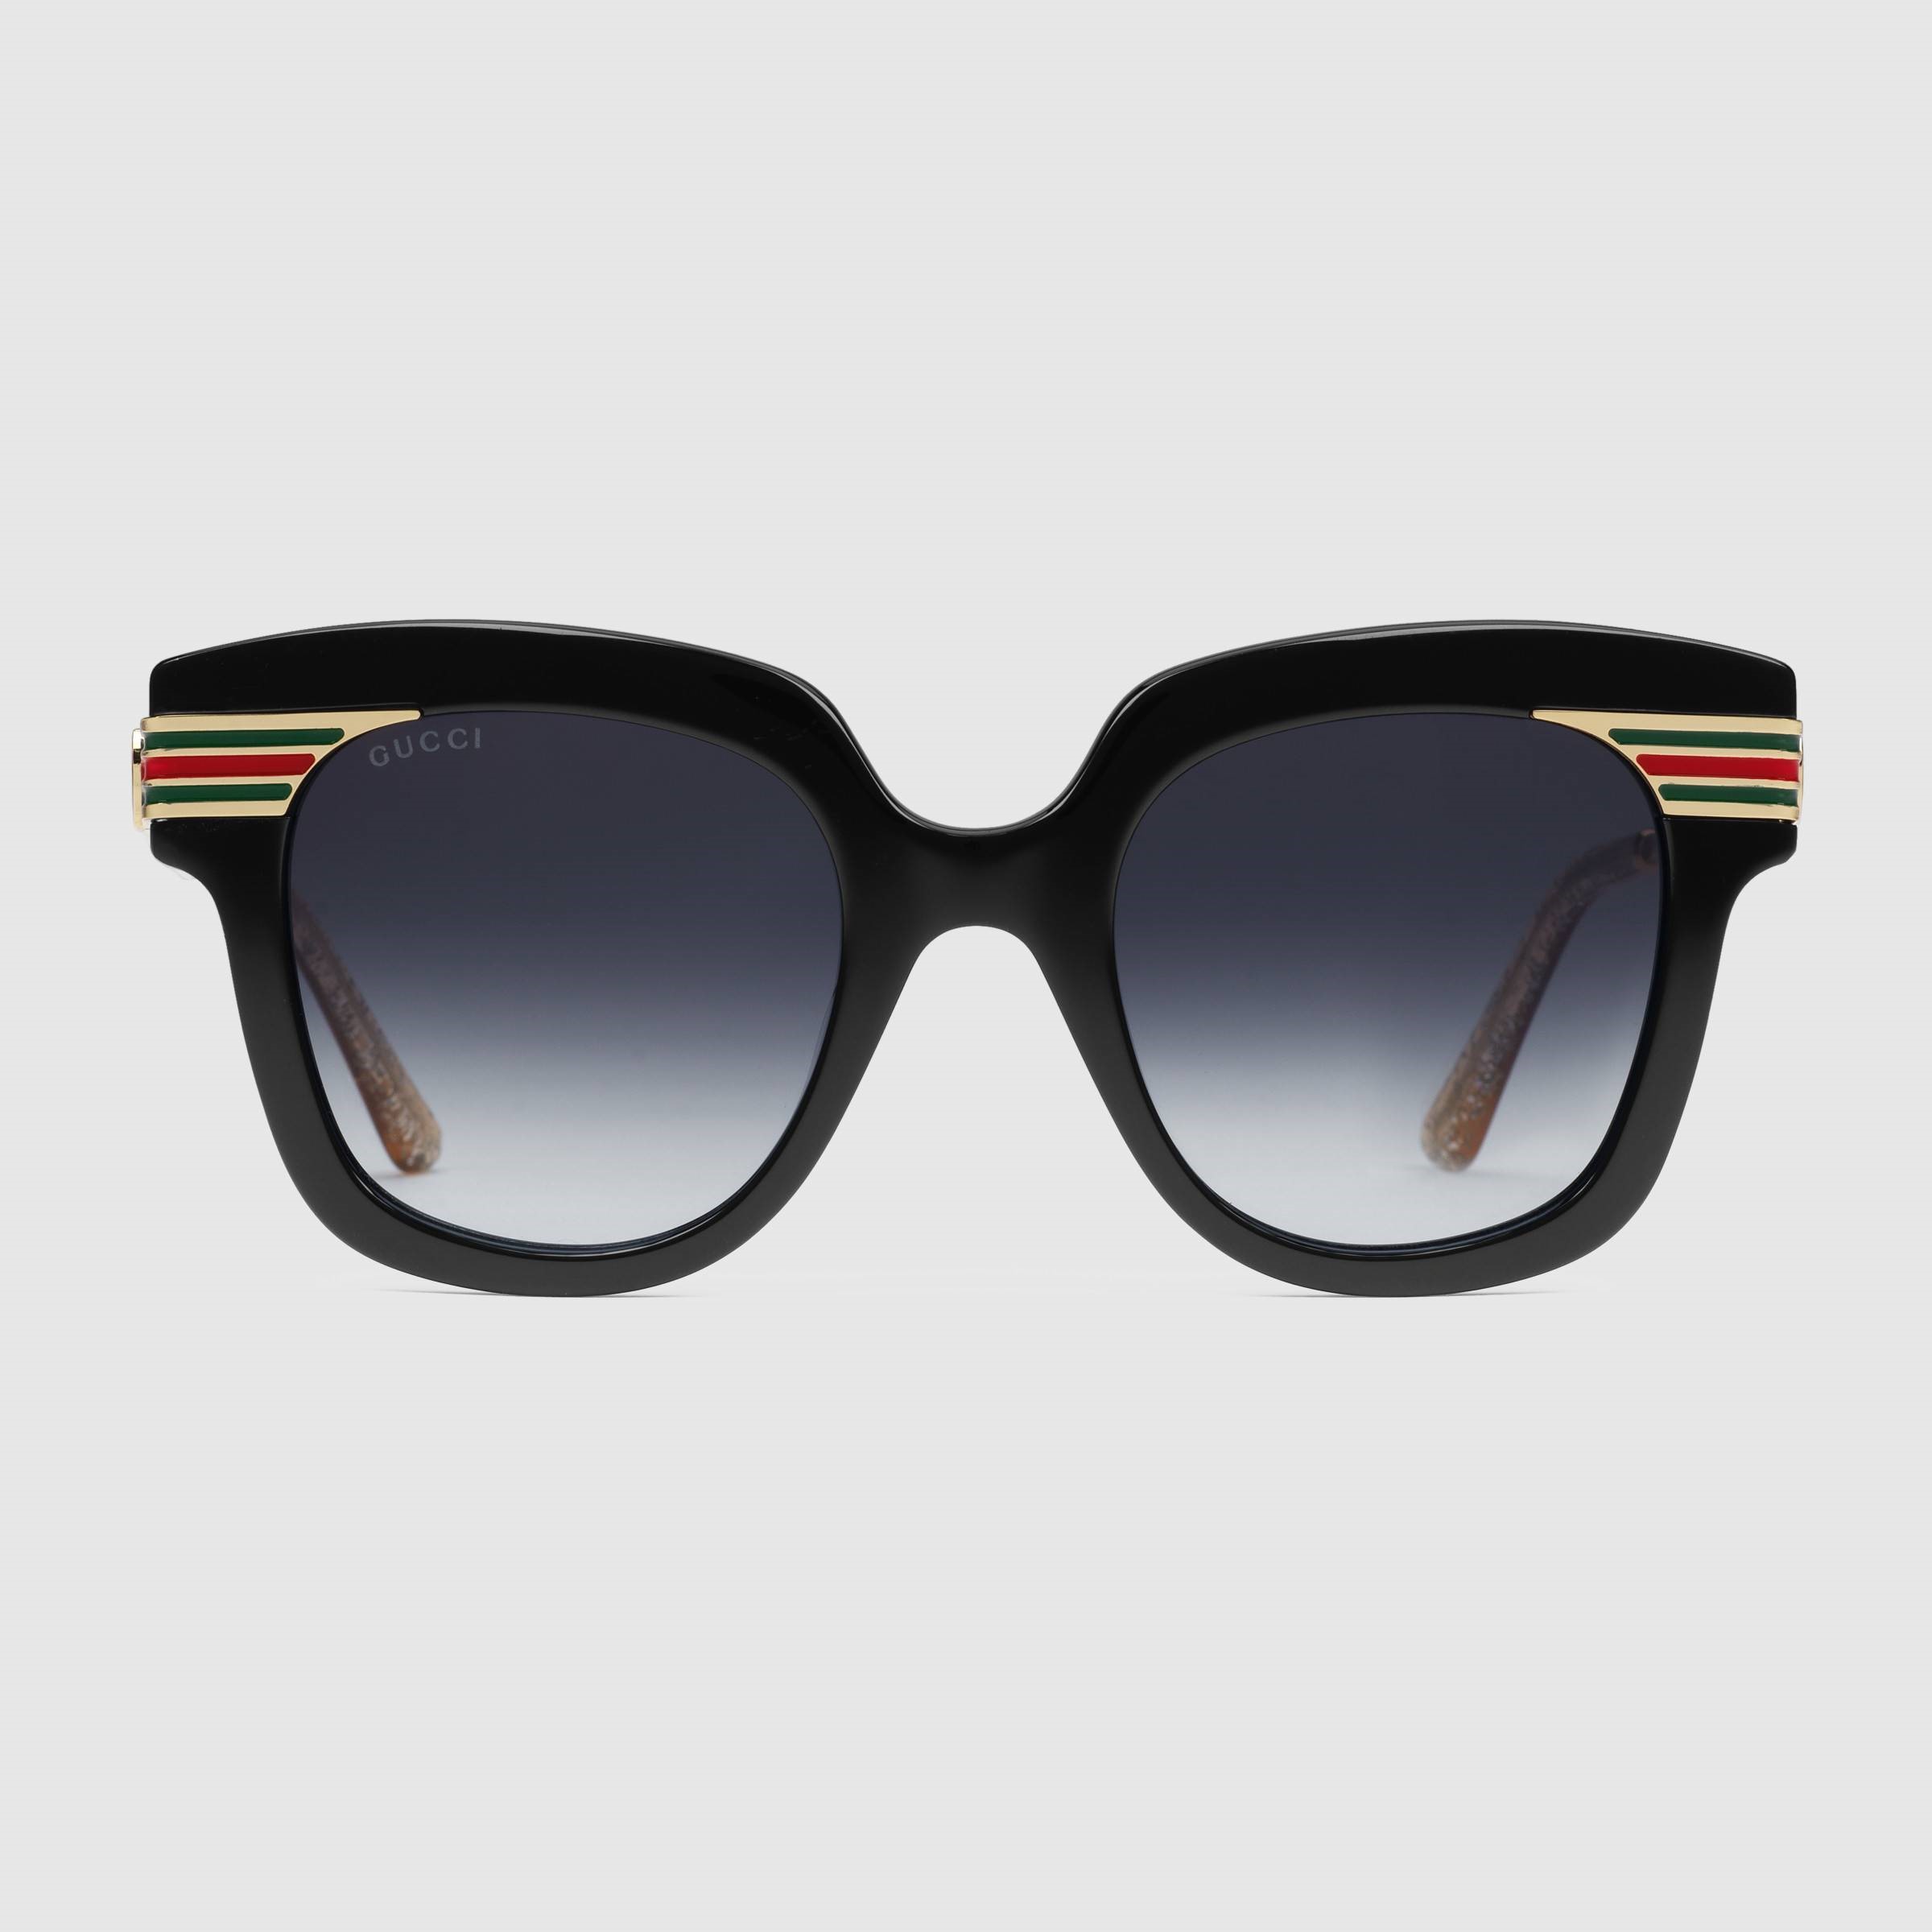 sunglasses — Blog full posts